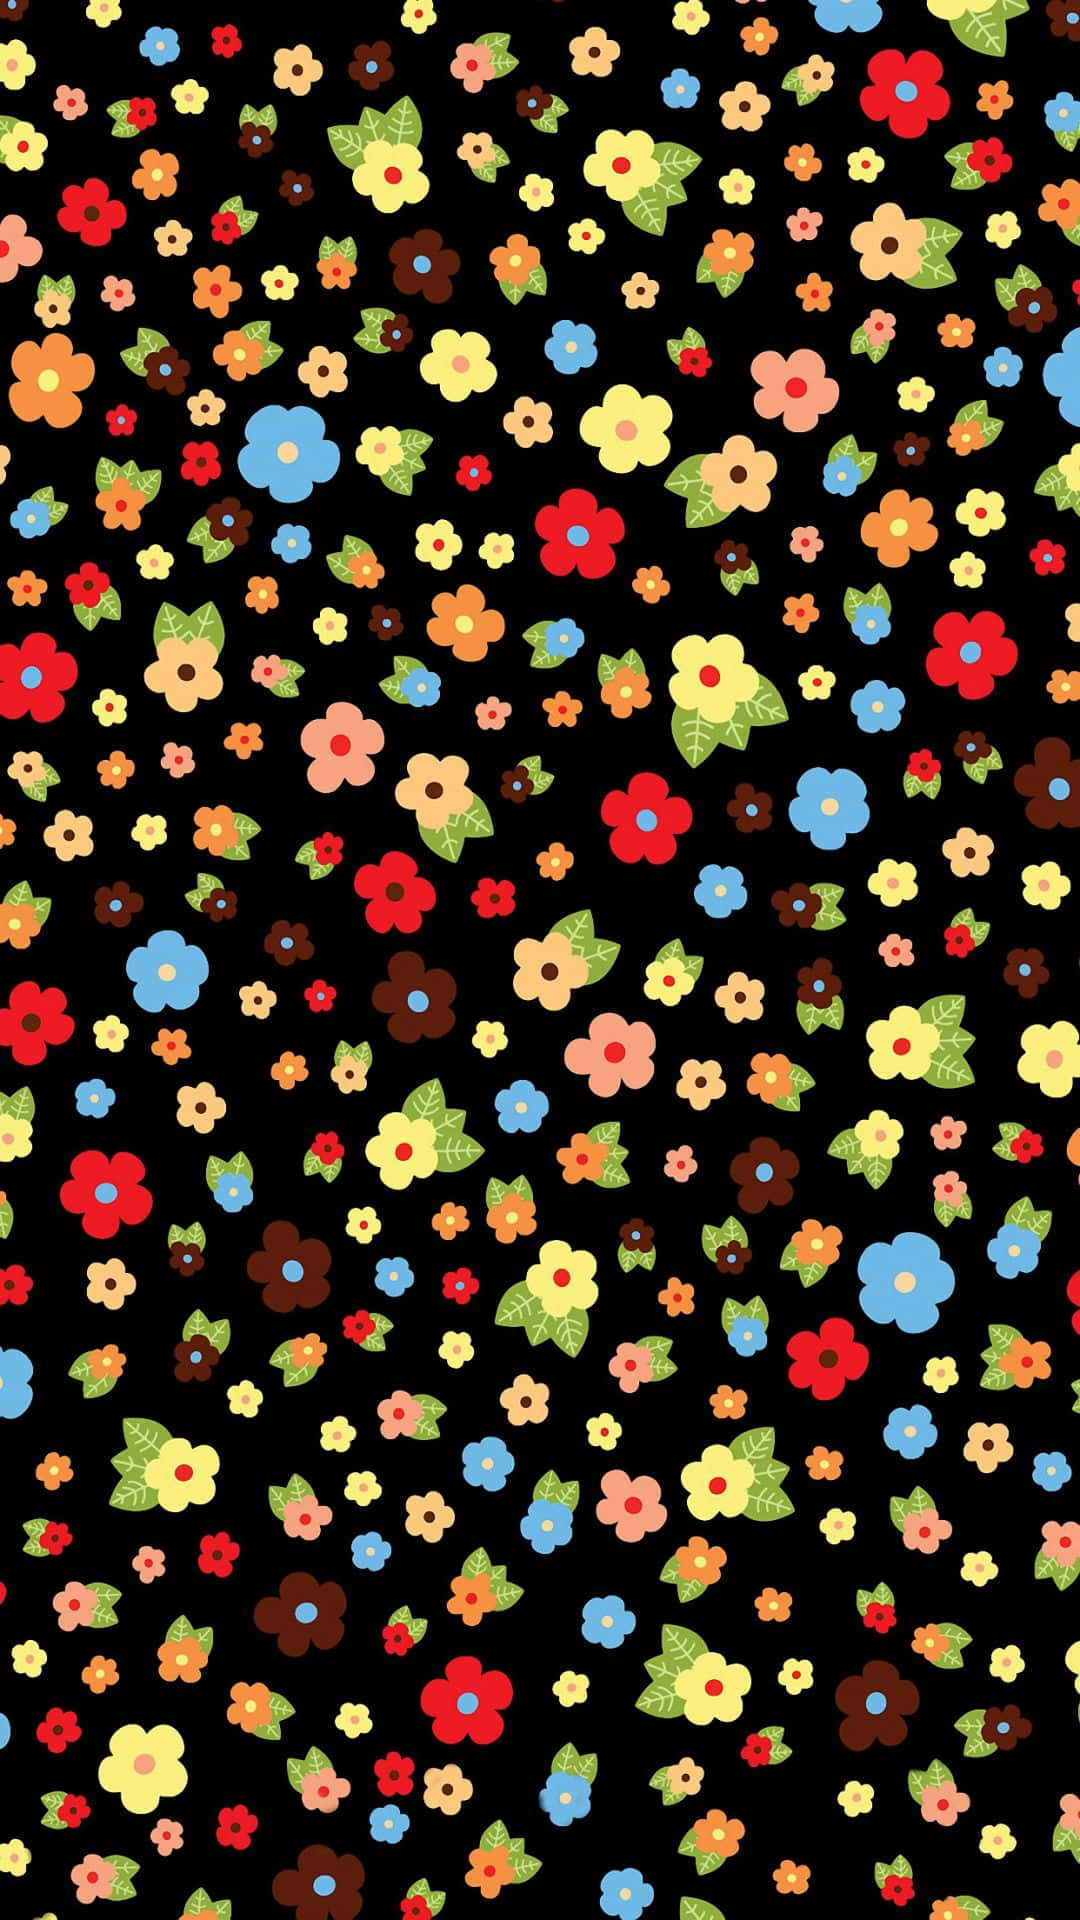 Einschwarzer Hintergrund Mit Bunten Blumen Wallpaper